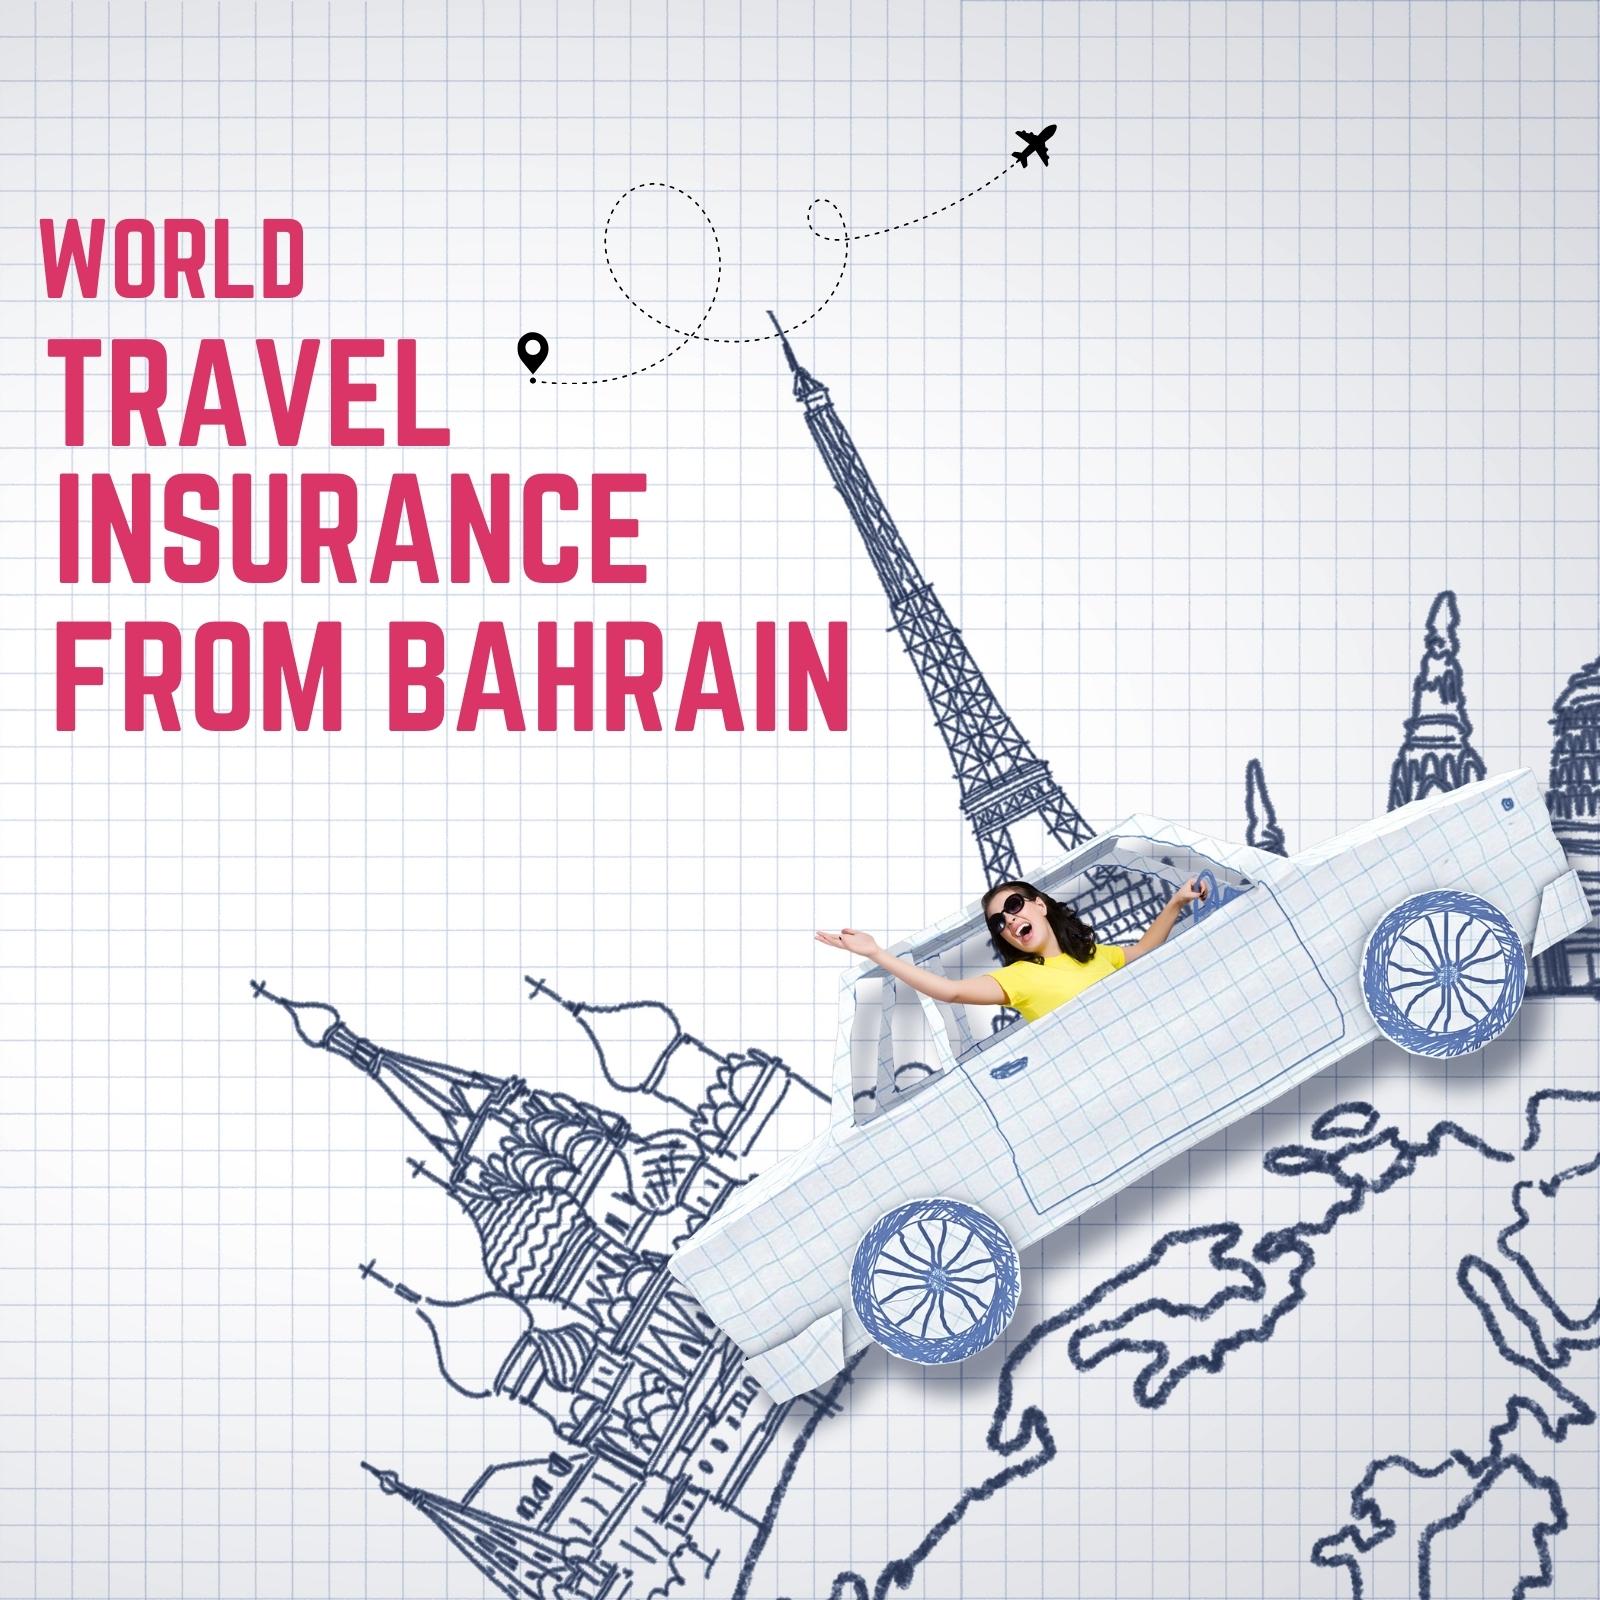 World-Travel-Insurance-From-Bahrain